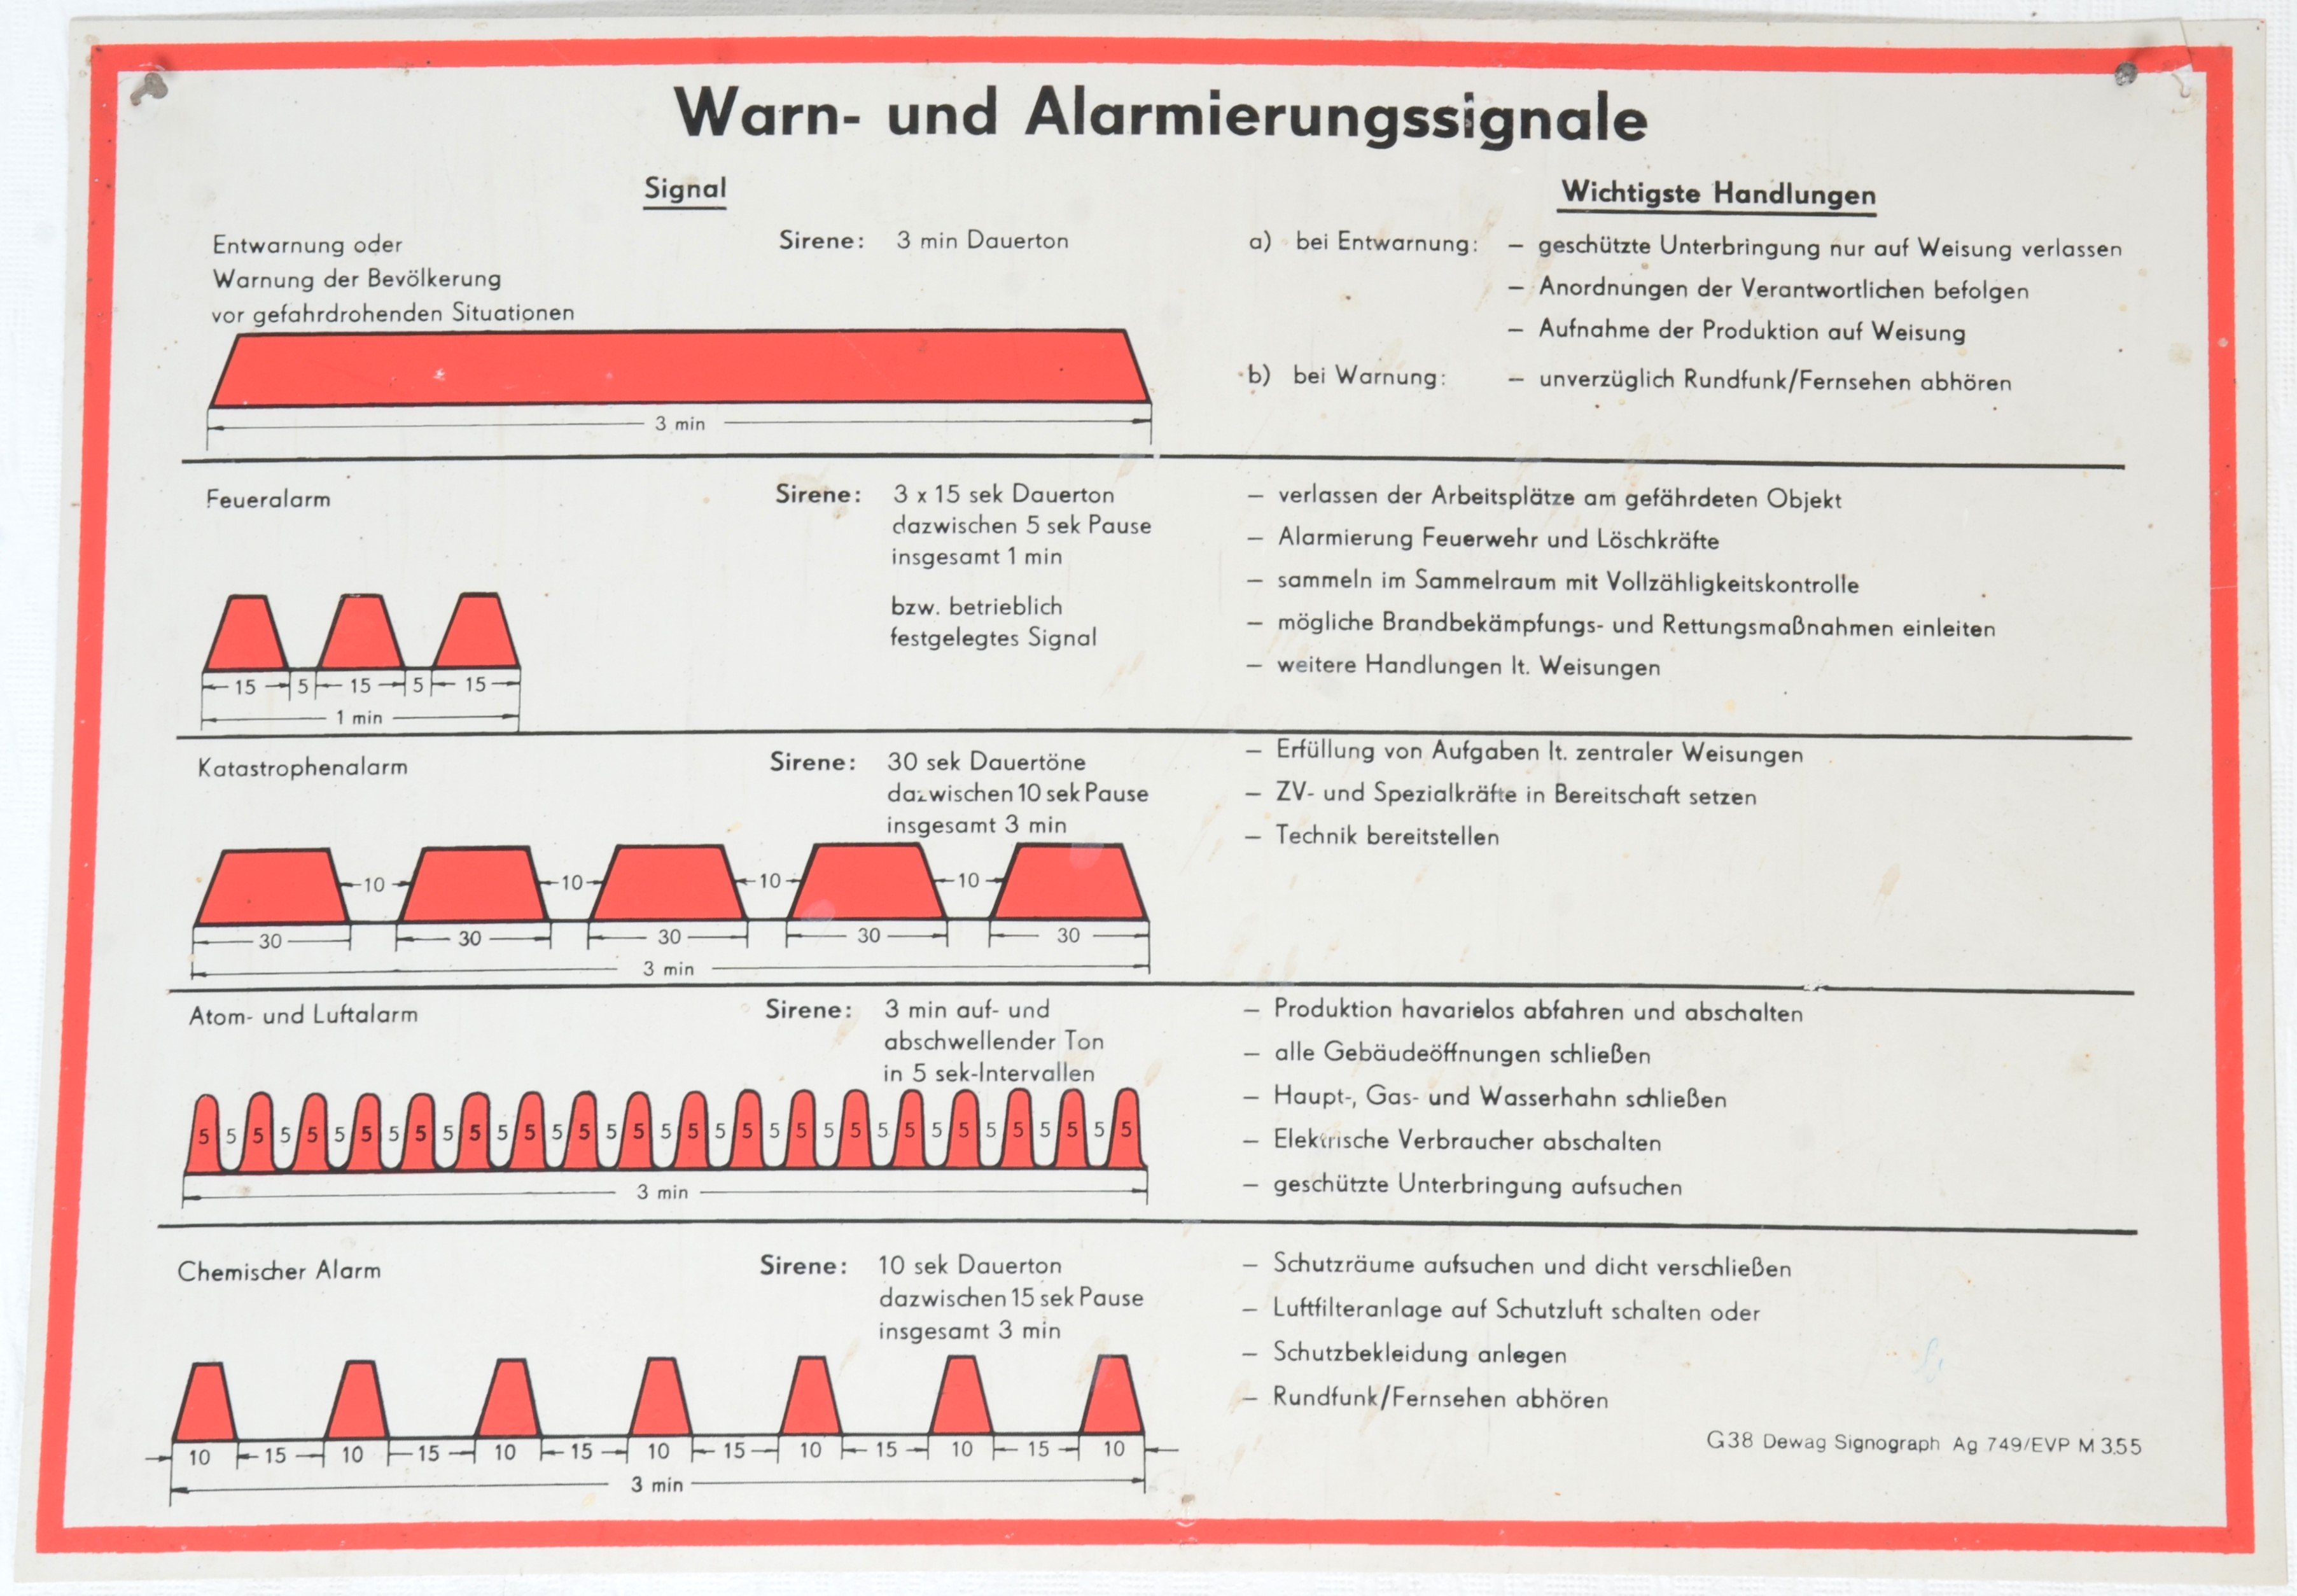 Schaubild "Warn- und Alarmierungssignale" (DDR Geschichtsmuseum im Dokumentationszentrum Perleberg CC BY-SA)